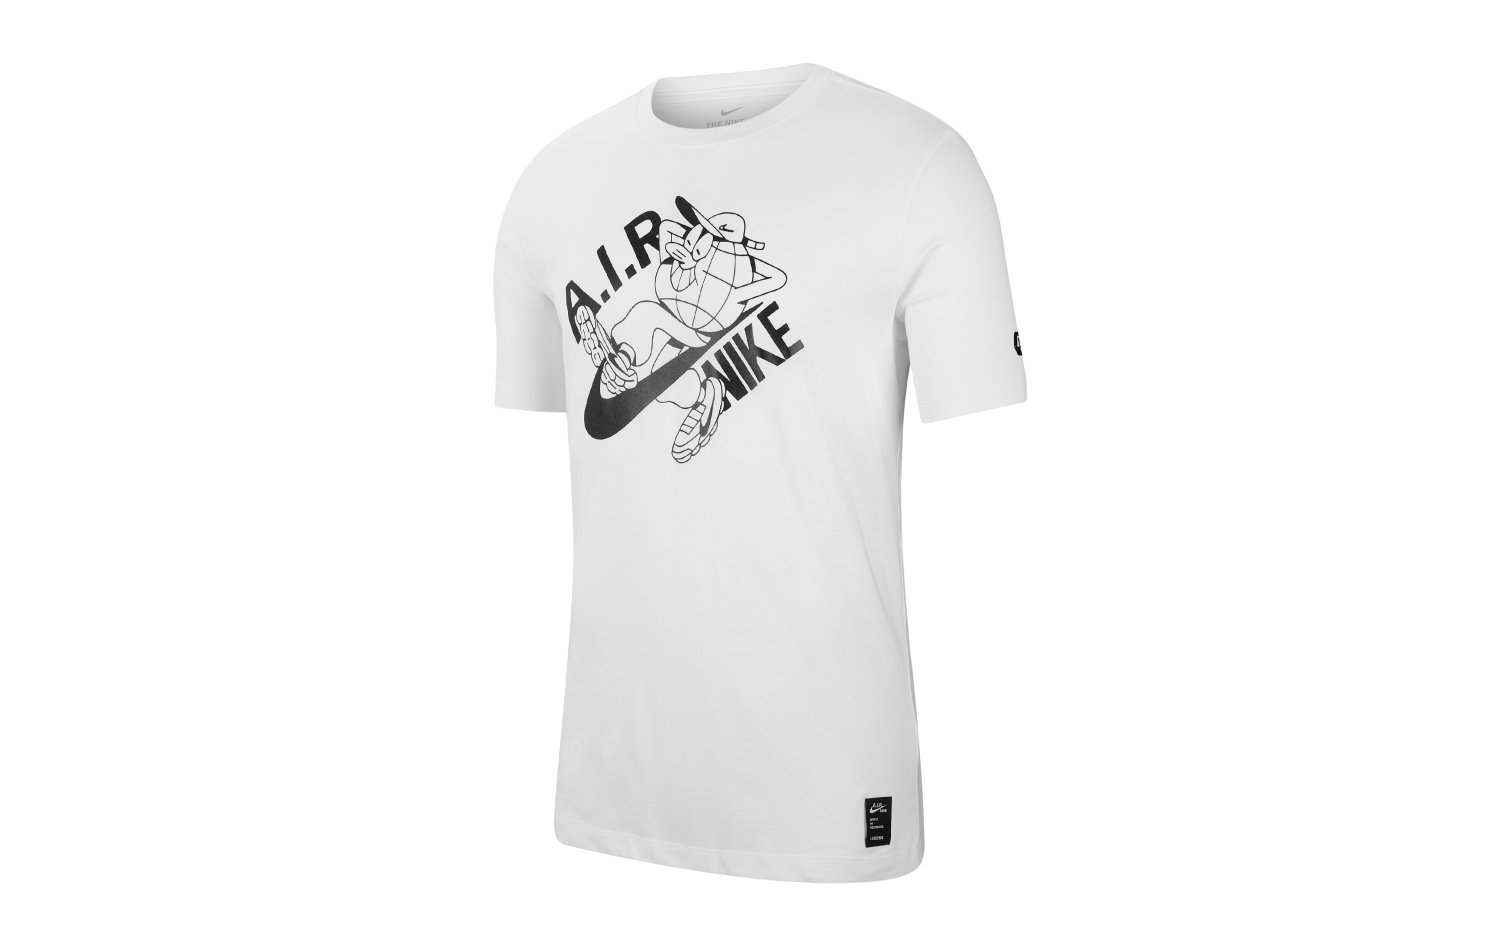 Nike Sportswear Lugosis S/S (CK2831-100)